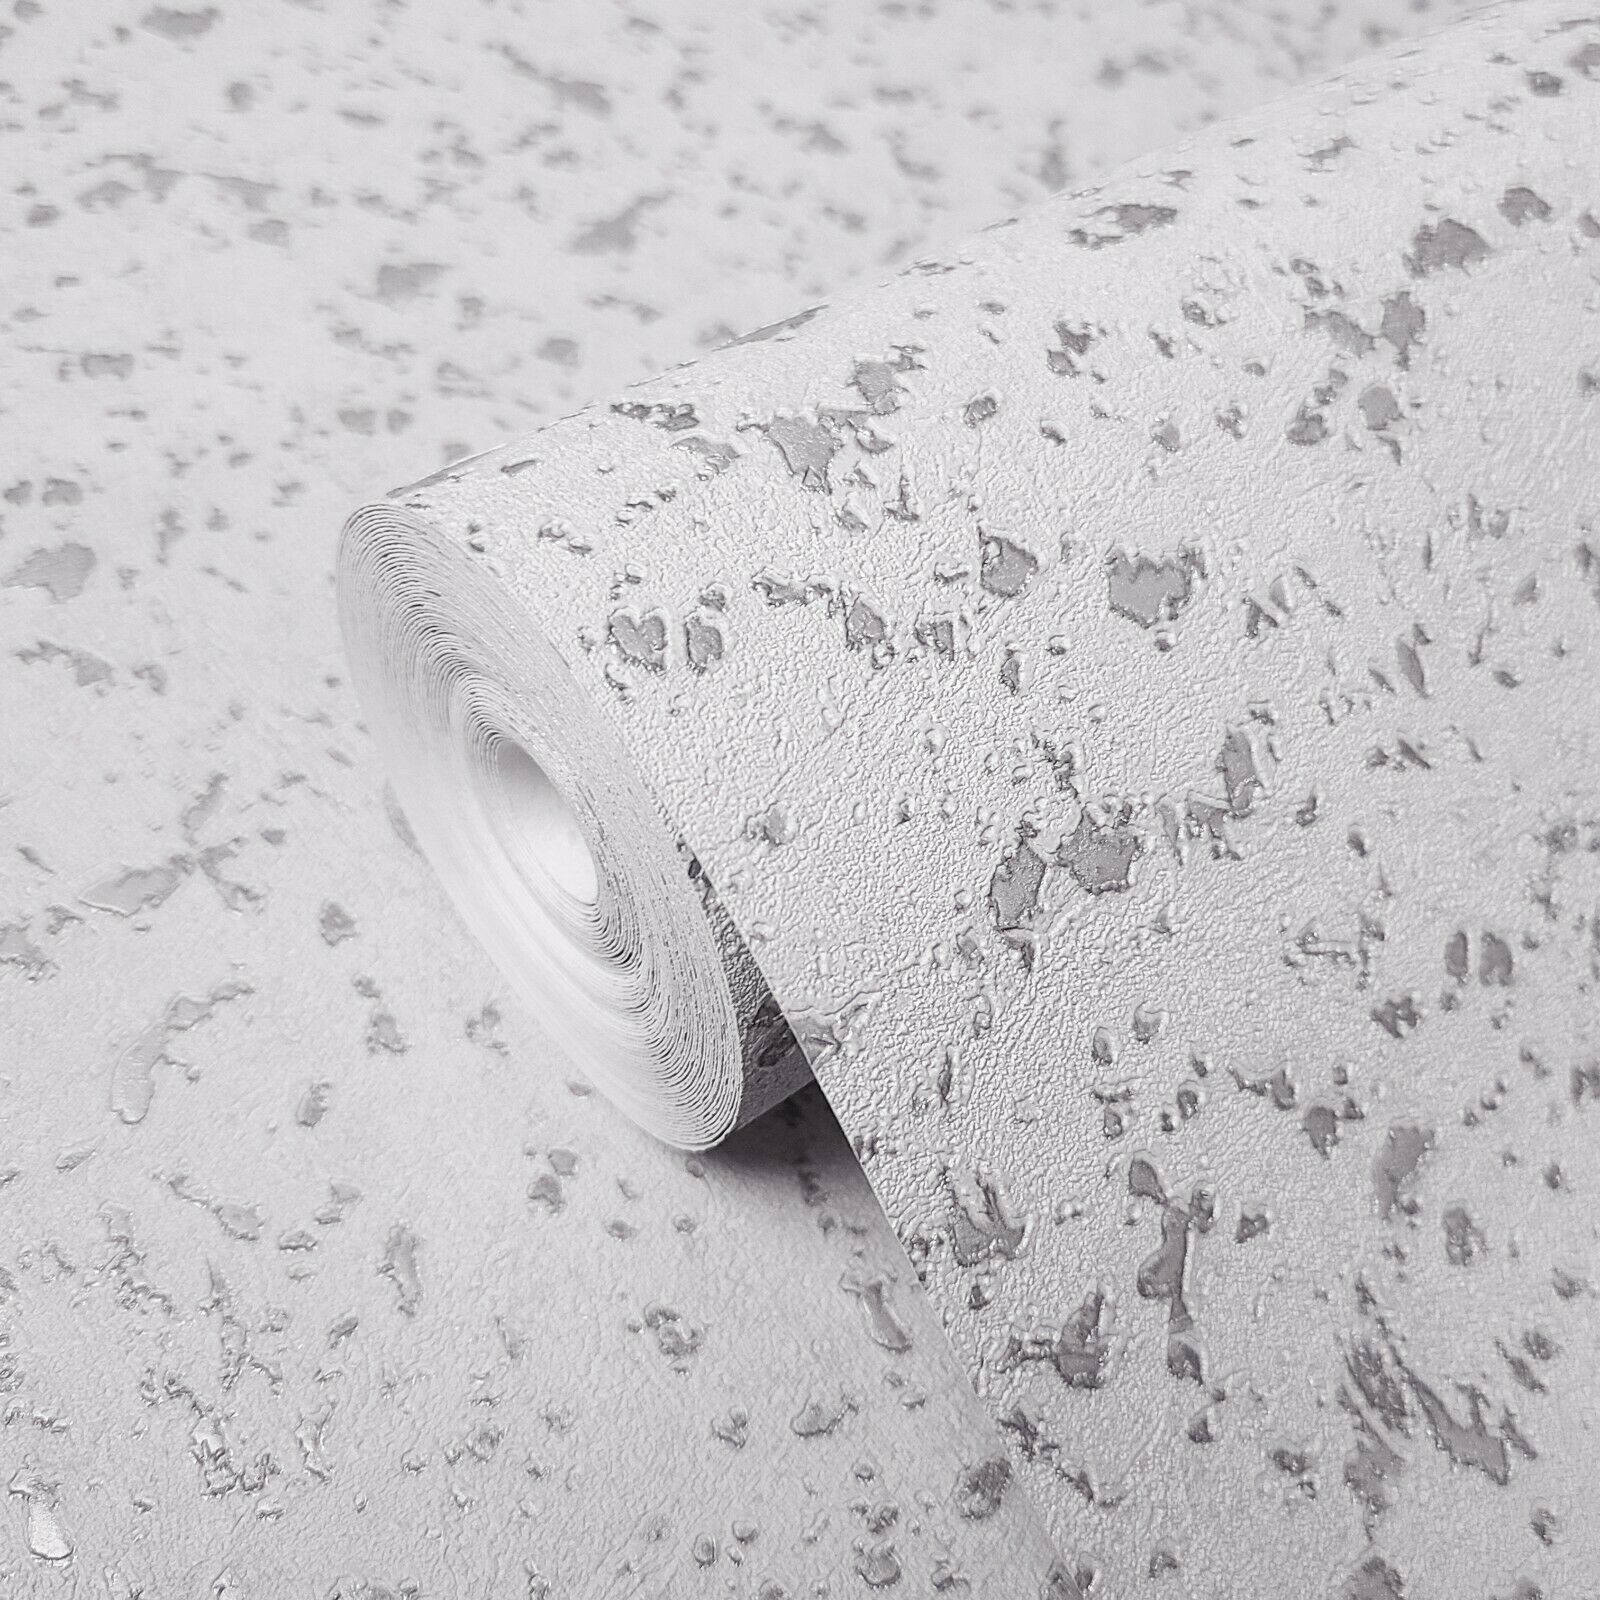 100+] White Glitter Wallpapers